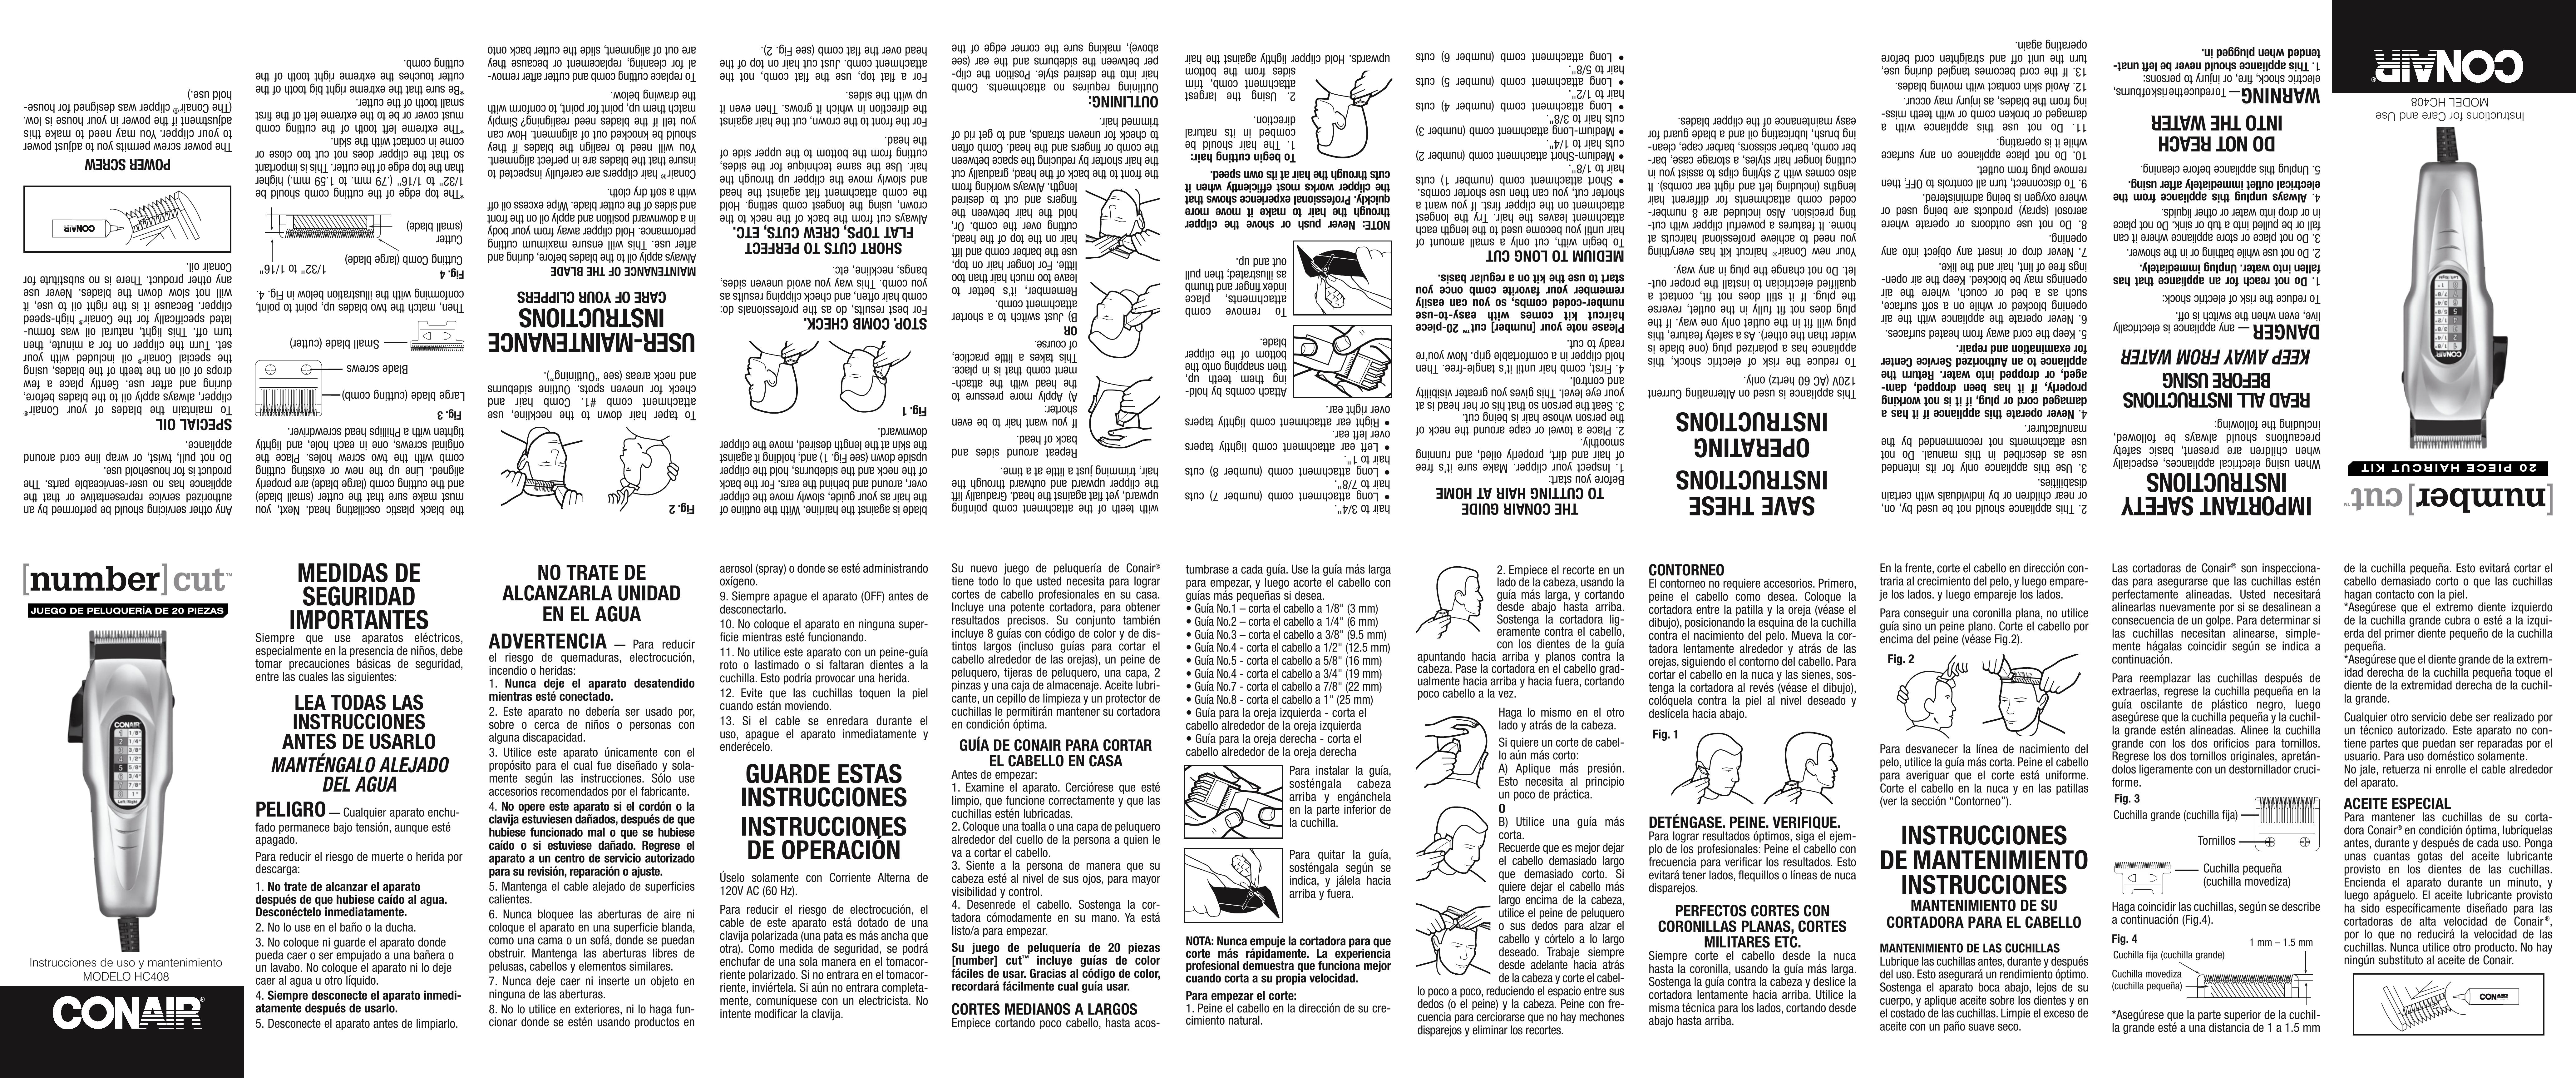 Conair HC408R Hair Clippers User Manual